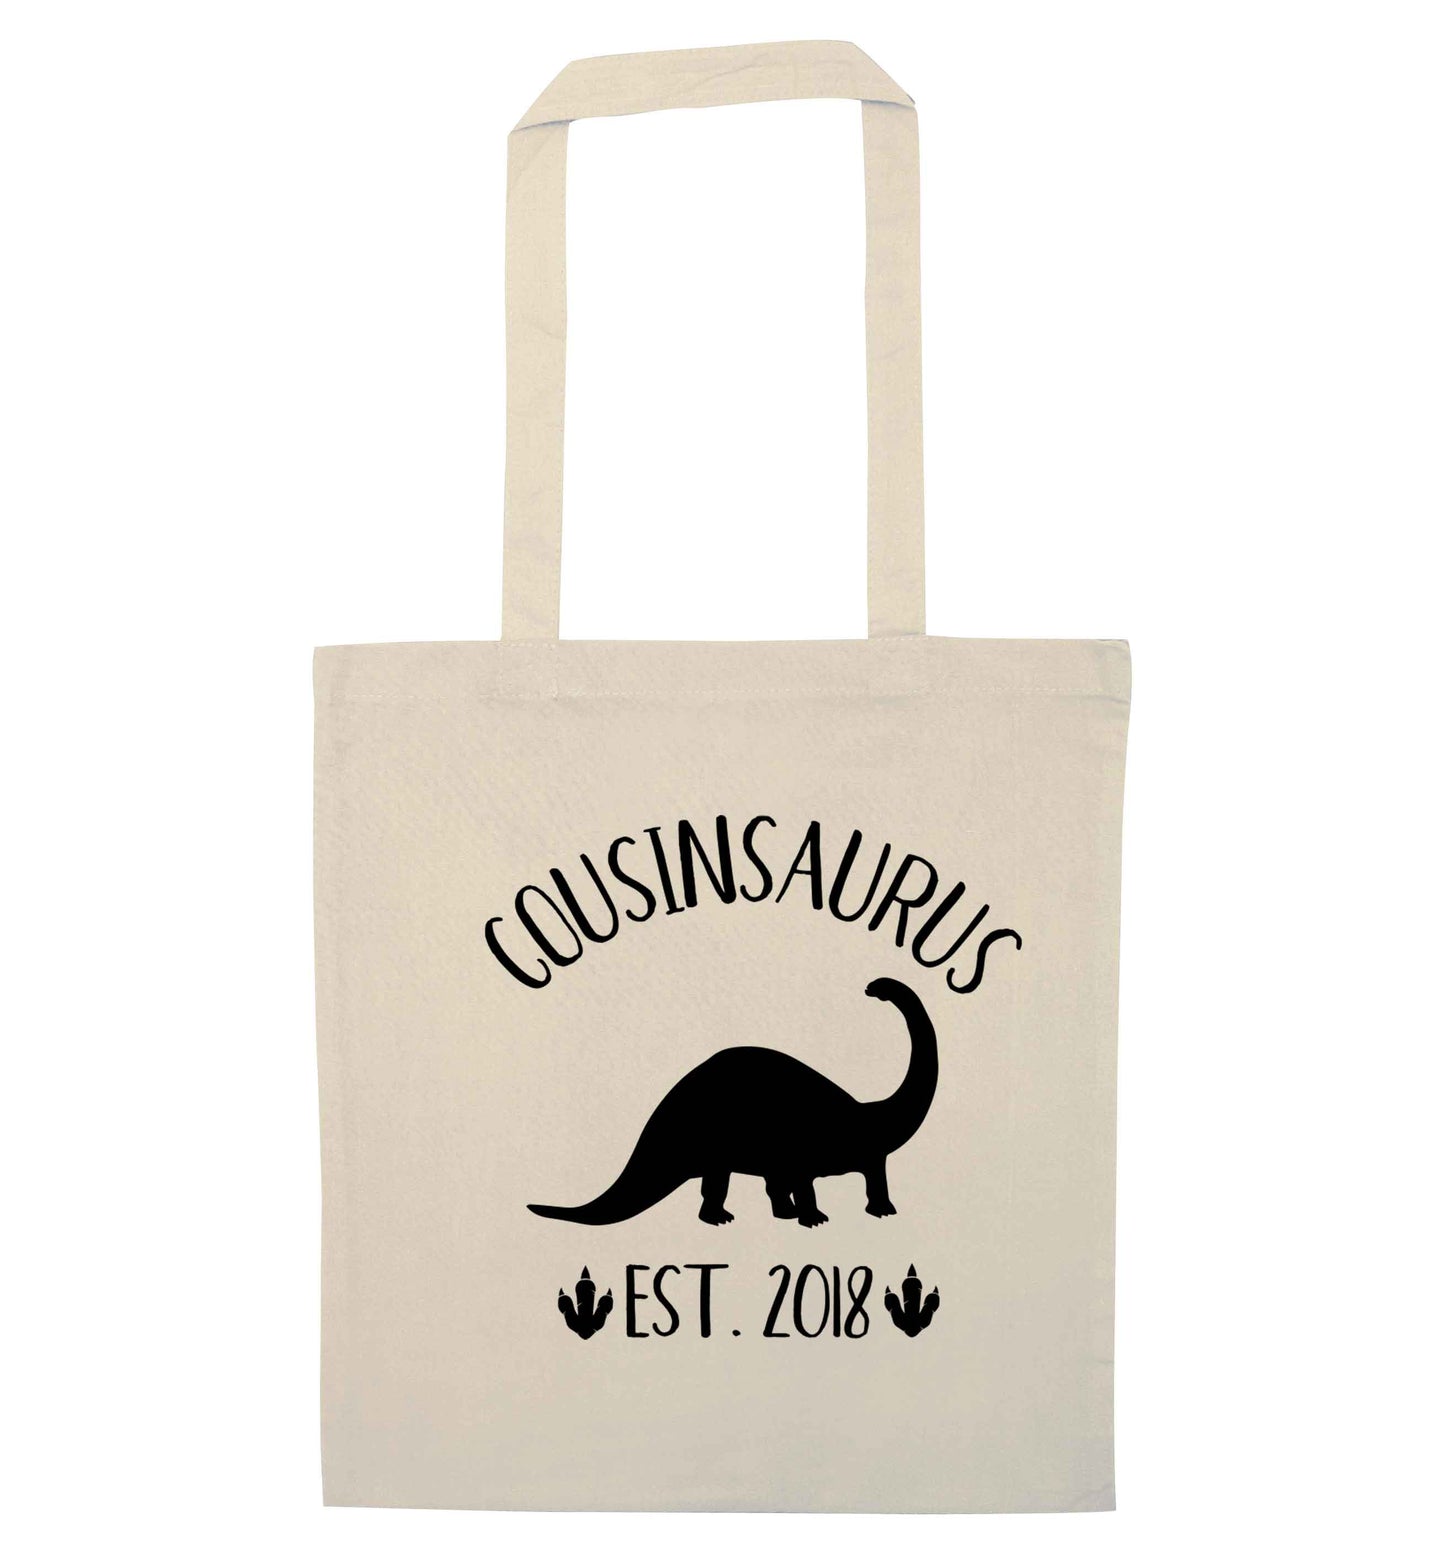 Personalised cousinsaurus since (custom date) natural tote bag